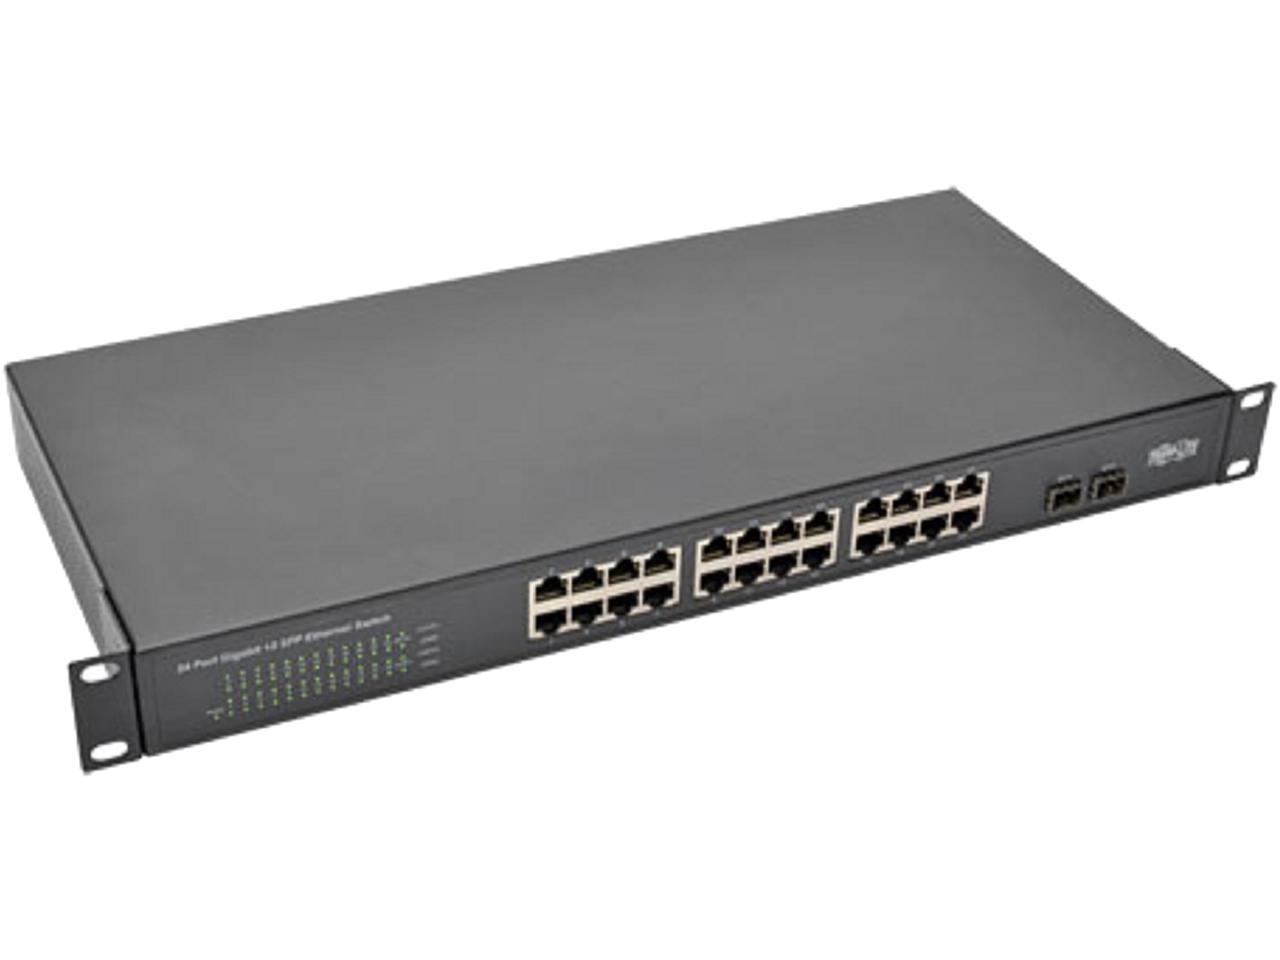 Tripp Lite 24-Port Rack-Mount/Desktop Gigabit Ethernet Unmanaged Switch, 10/100/1000 Mbps, 2 Gigabit SFP Ports, Metal Housing, 1URM (NG24) - image 1 of 5